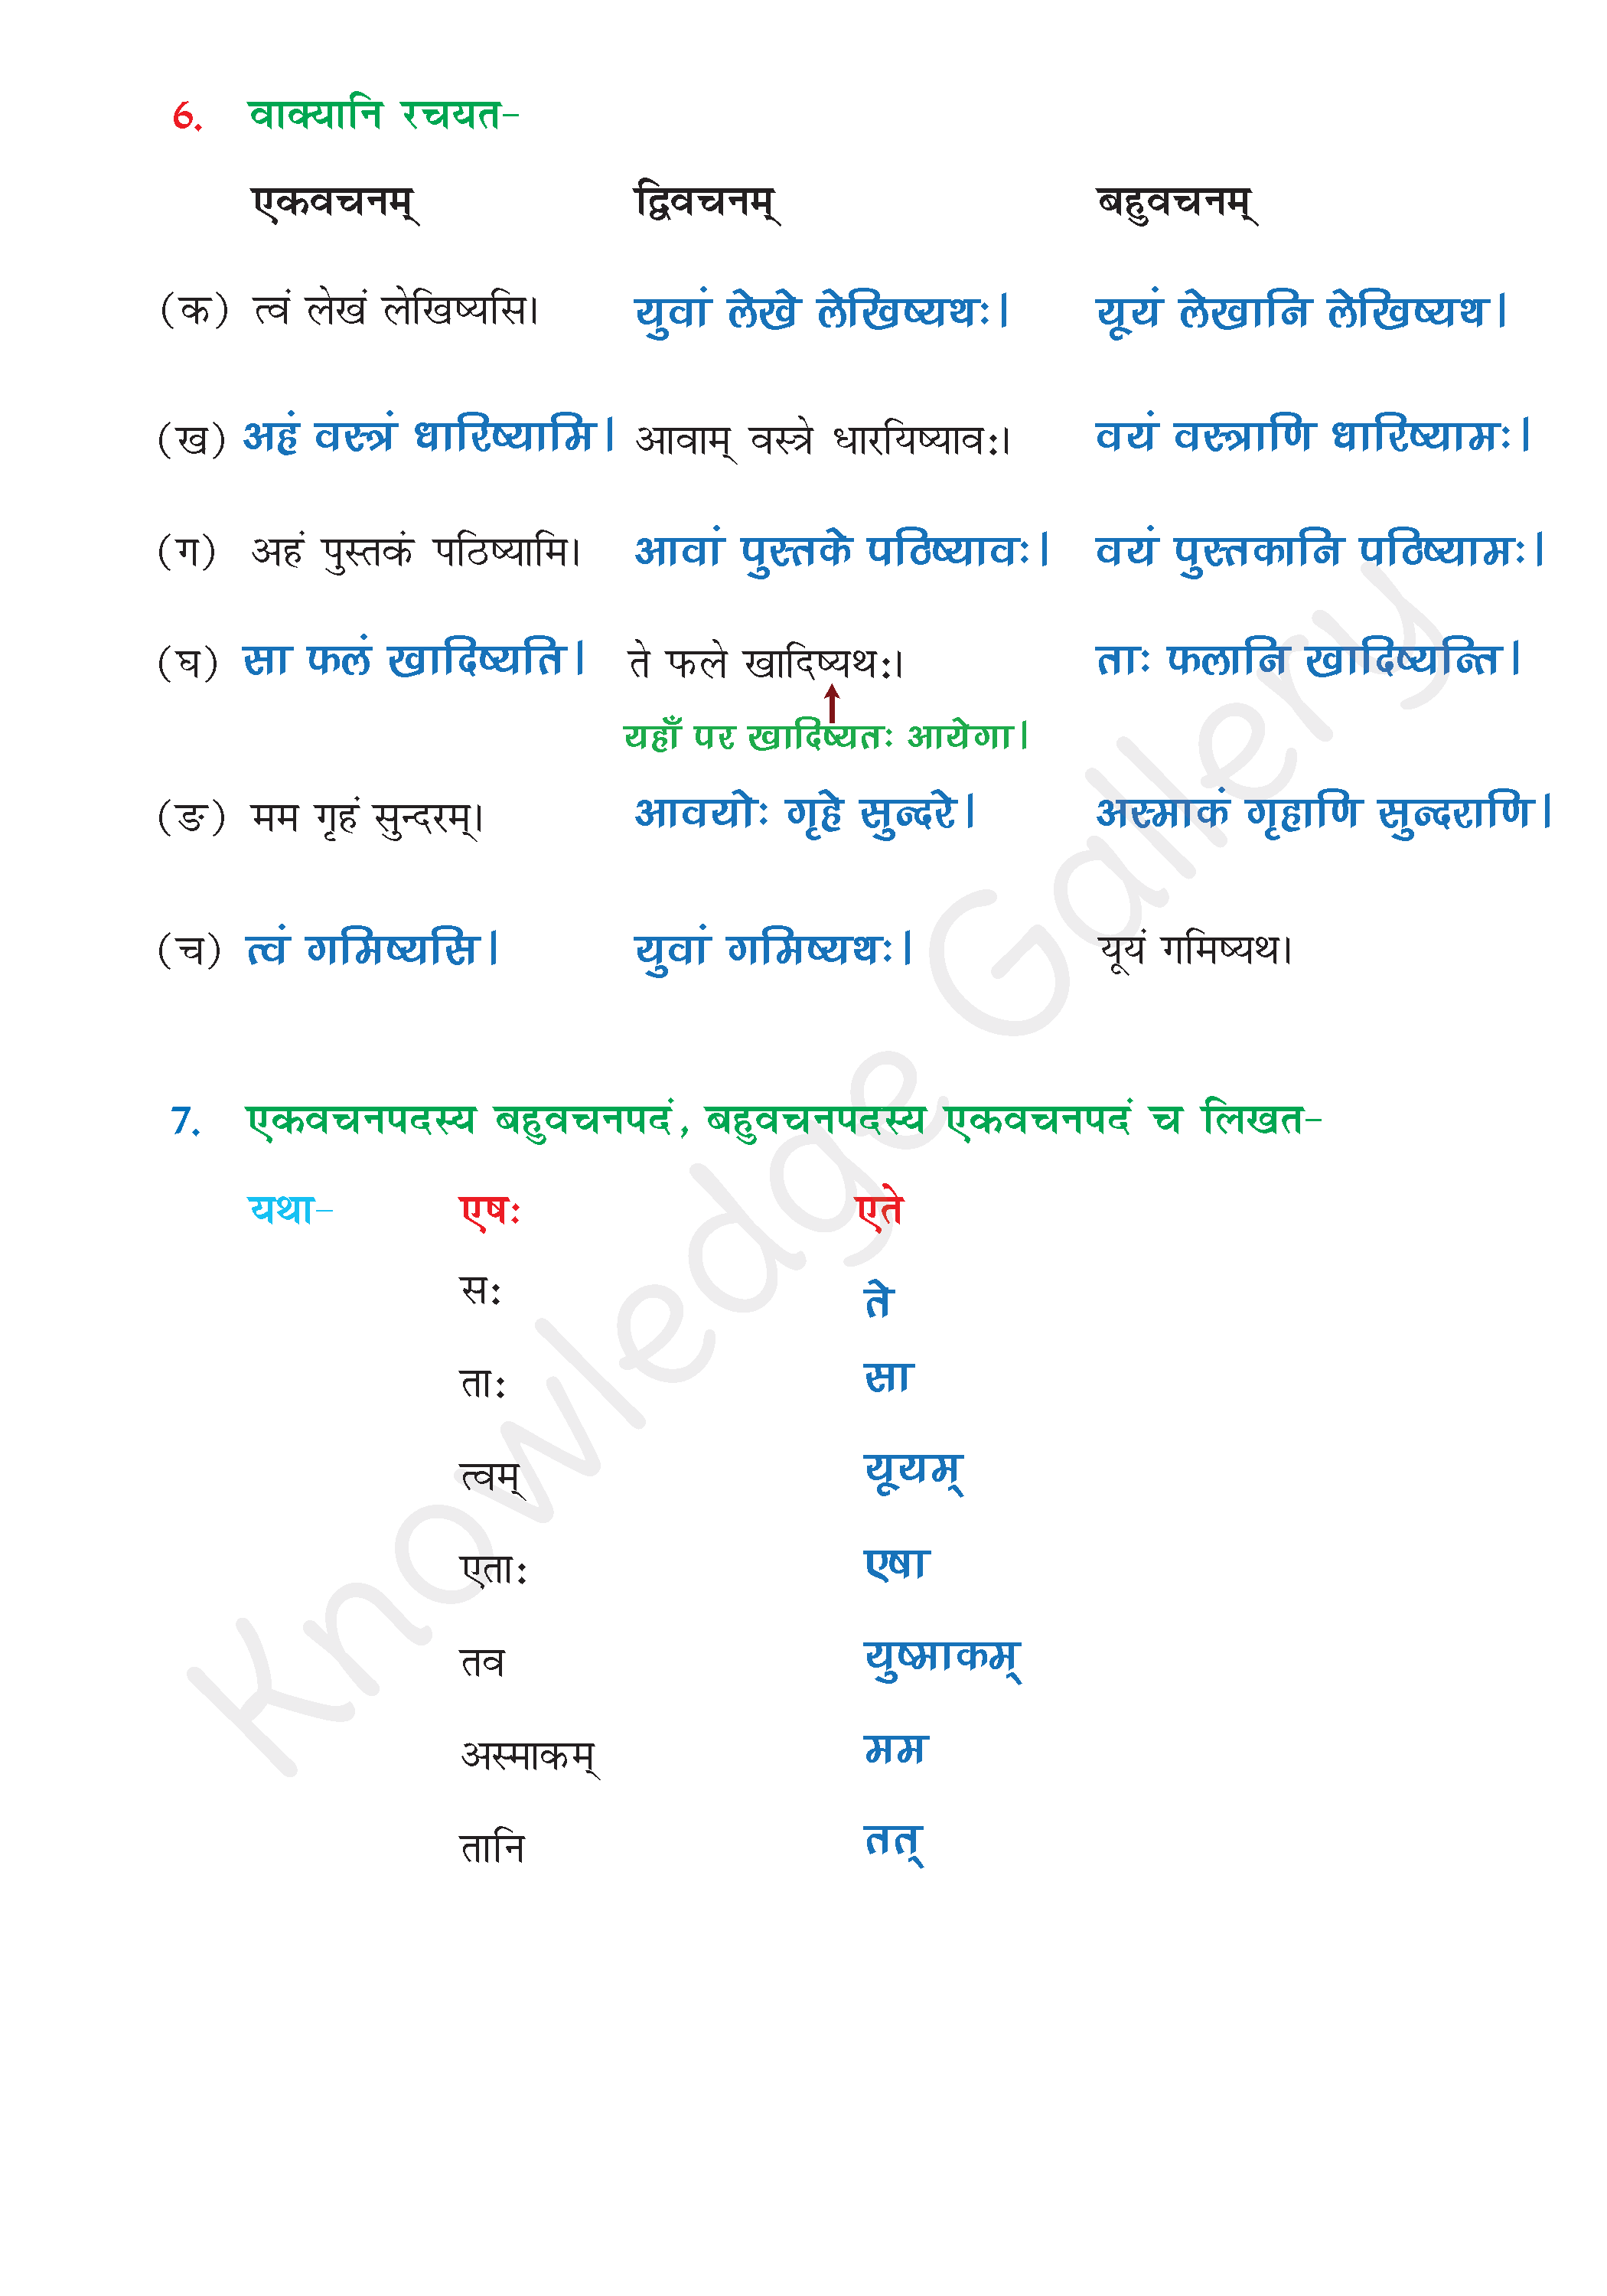 NCERT Solution For Class 6 Sanskrit Chapter 9 part 6